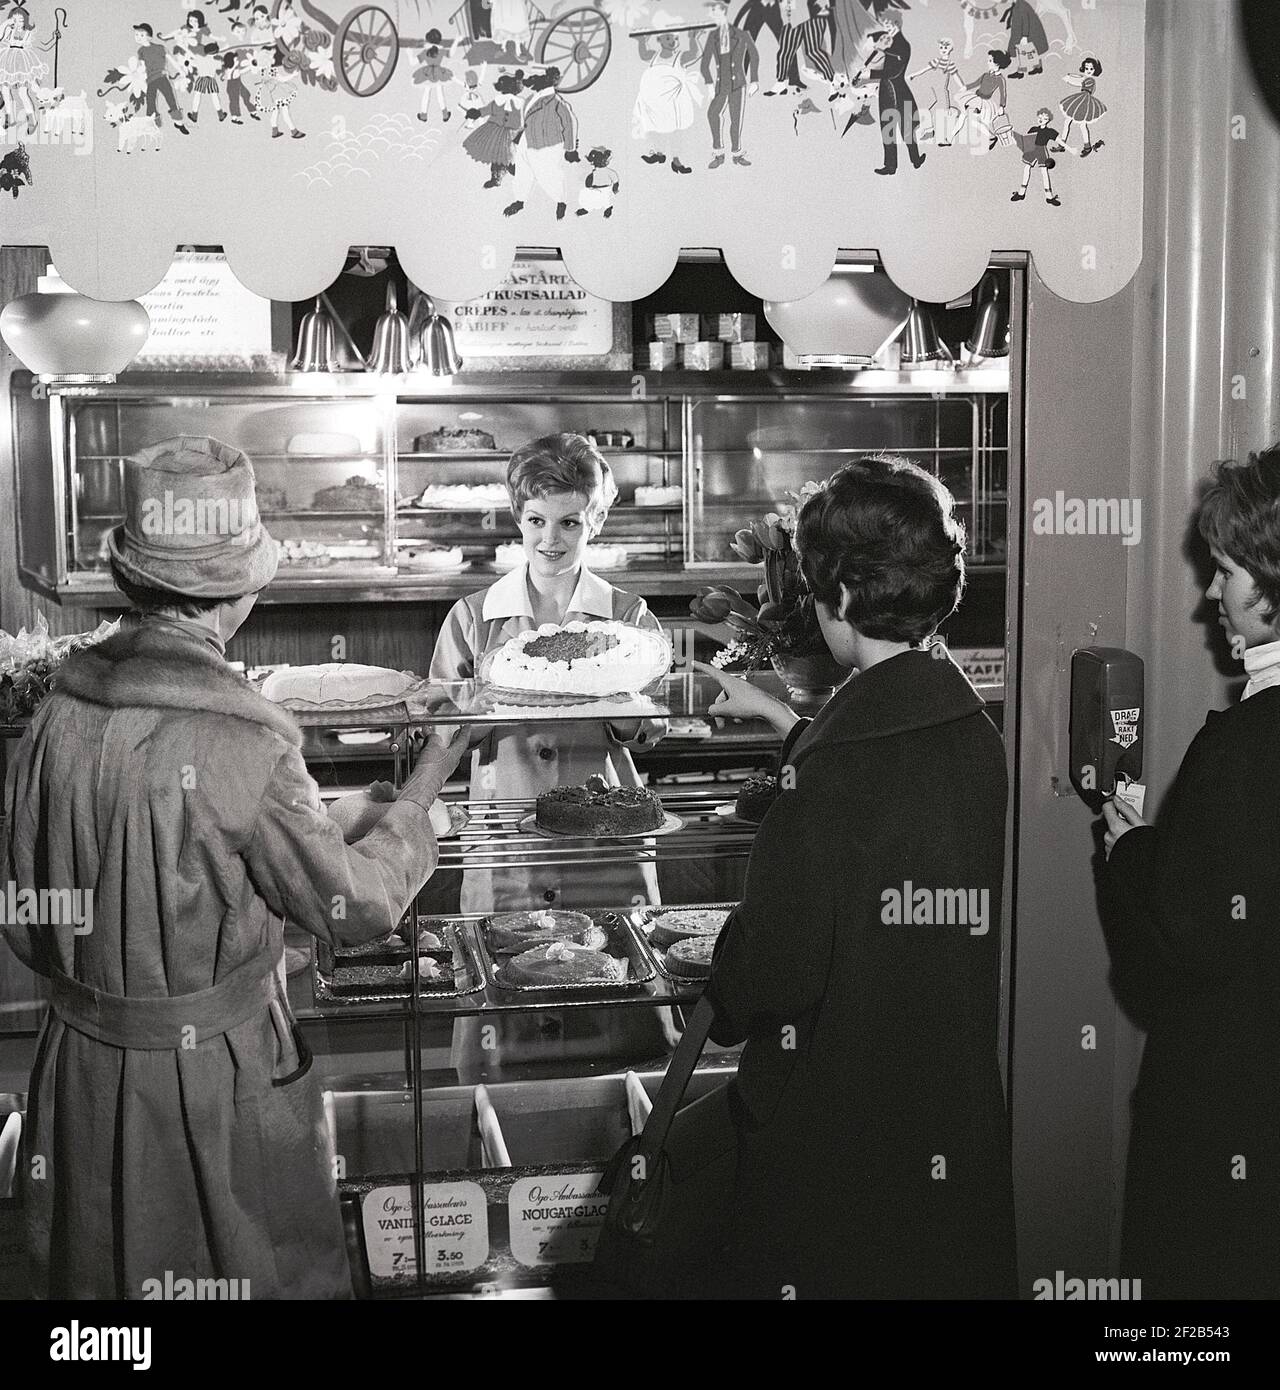 café des années 1960. Deux femmes sont debout devant le comptoir qui est plein de gâteaux et de pâtisseries fraîchement sortis du four. Suède années 1960 réf. CX81-10 Banque D'Images